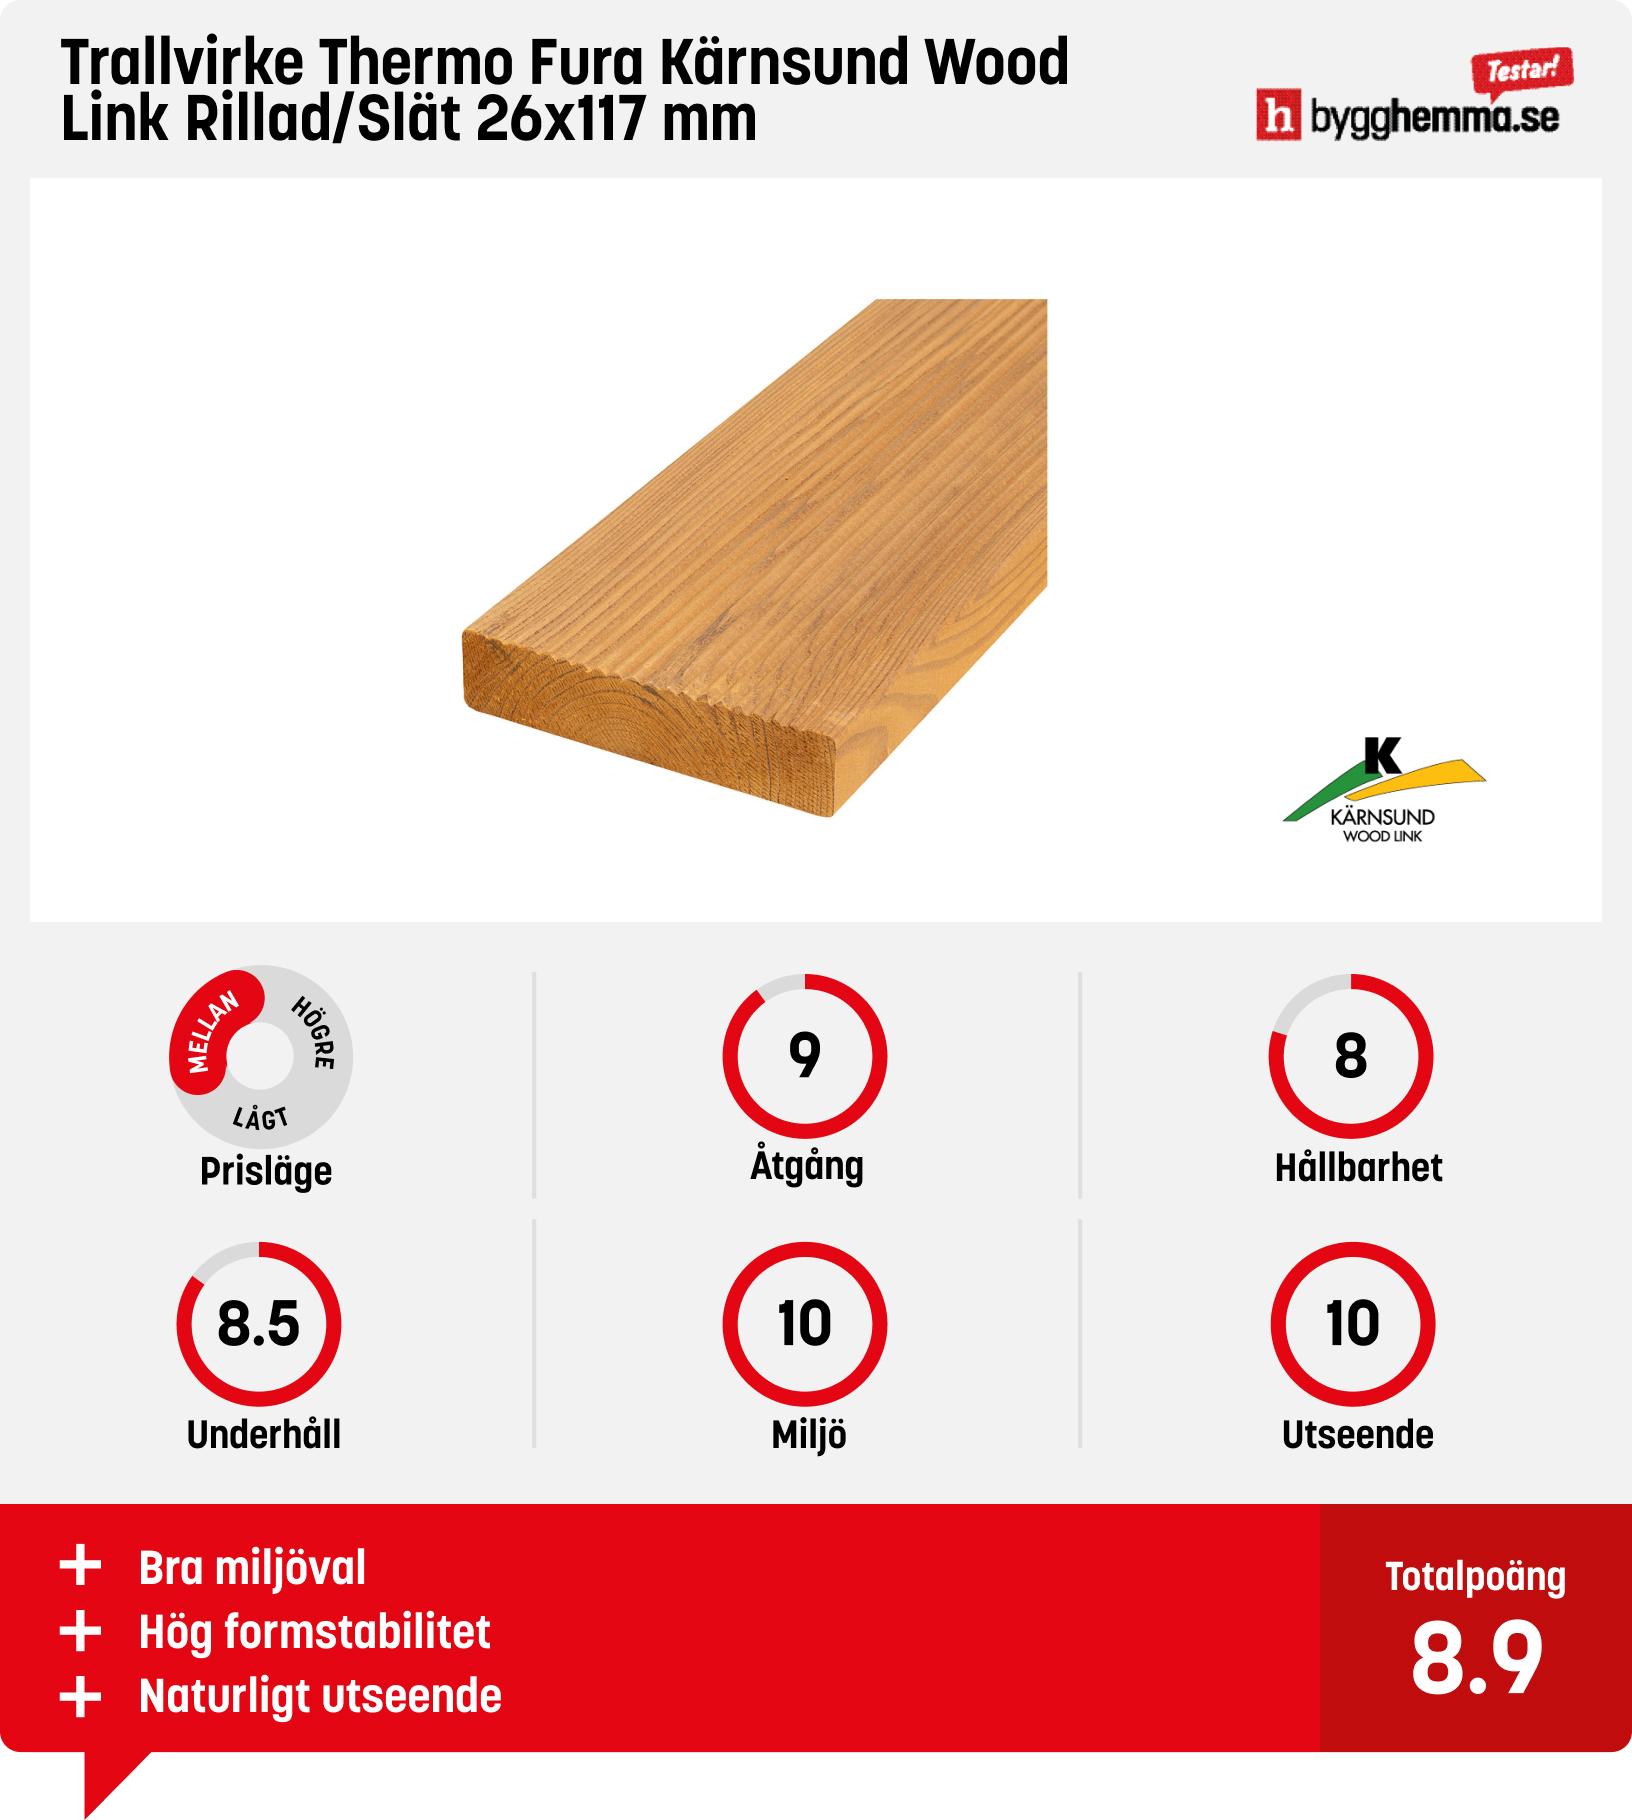 Trall bäst i test - Trallvirke Thermo Fura Kärnsund Wood Link Rillad/Slät 26x117 mm